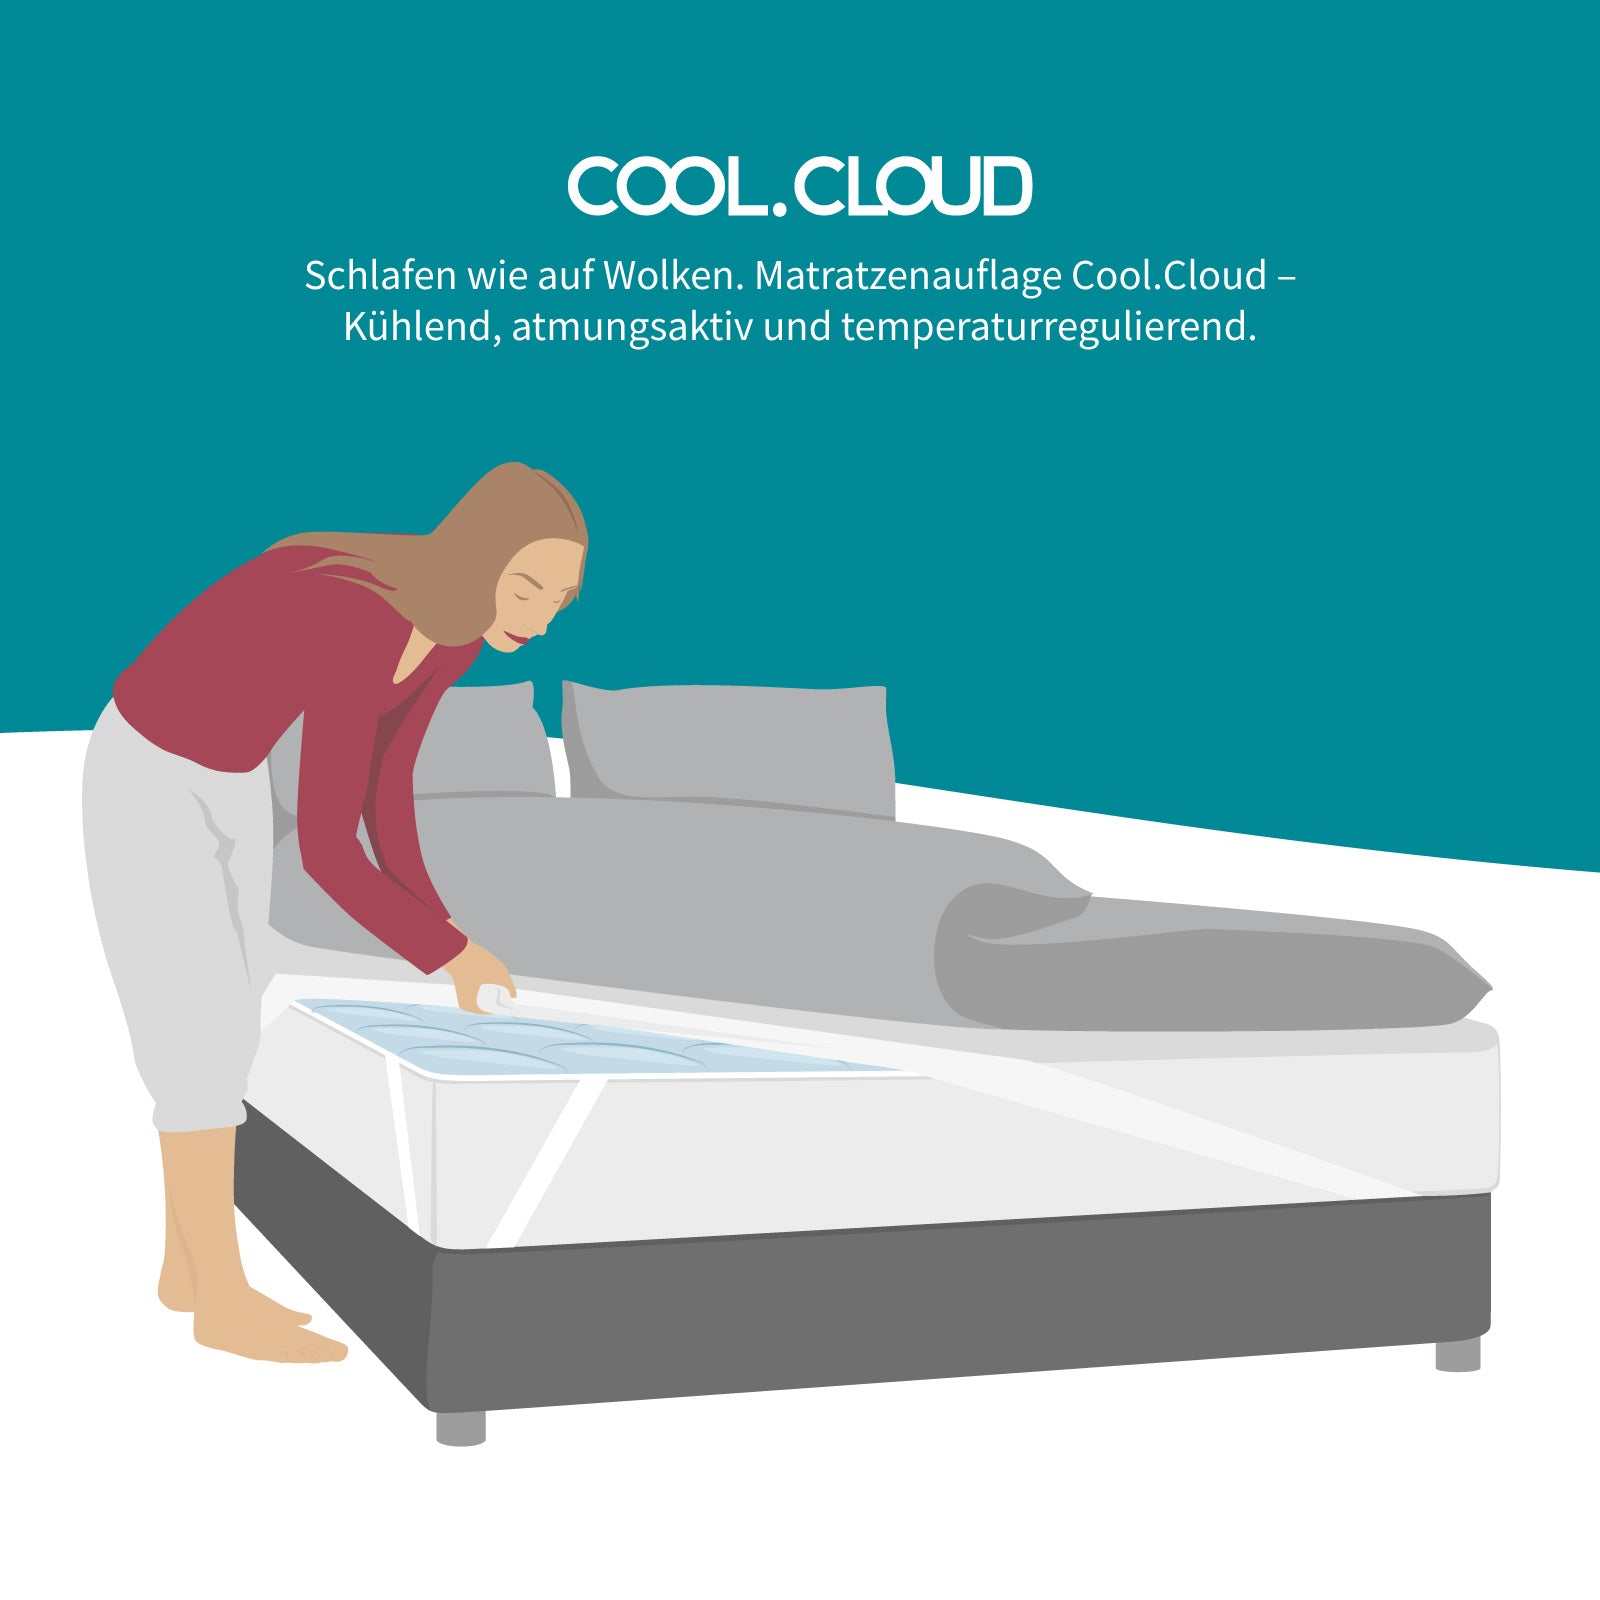 Atmungsaktive, klimaregulierende Matratzenauflage - COOL.CLOUD - Schlafen wie auf einer Wolke